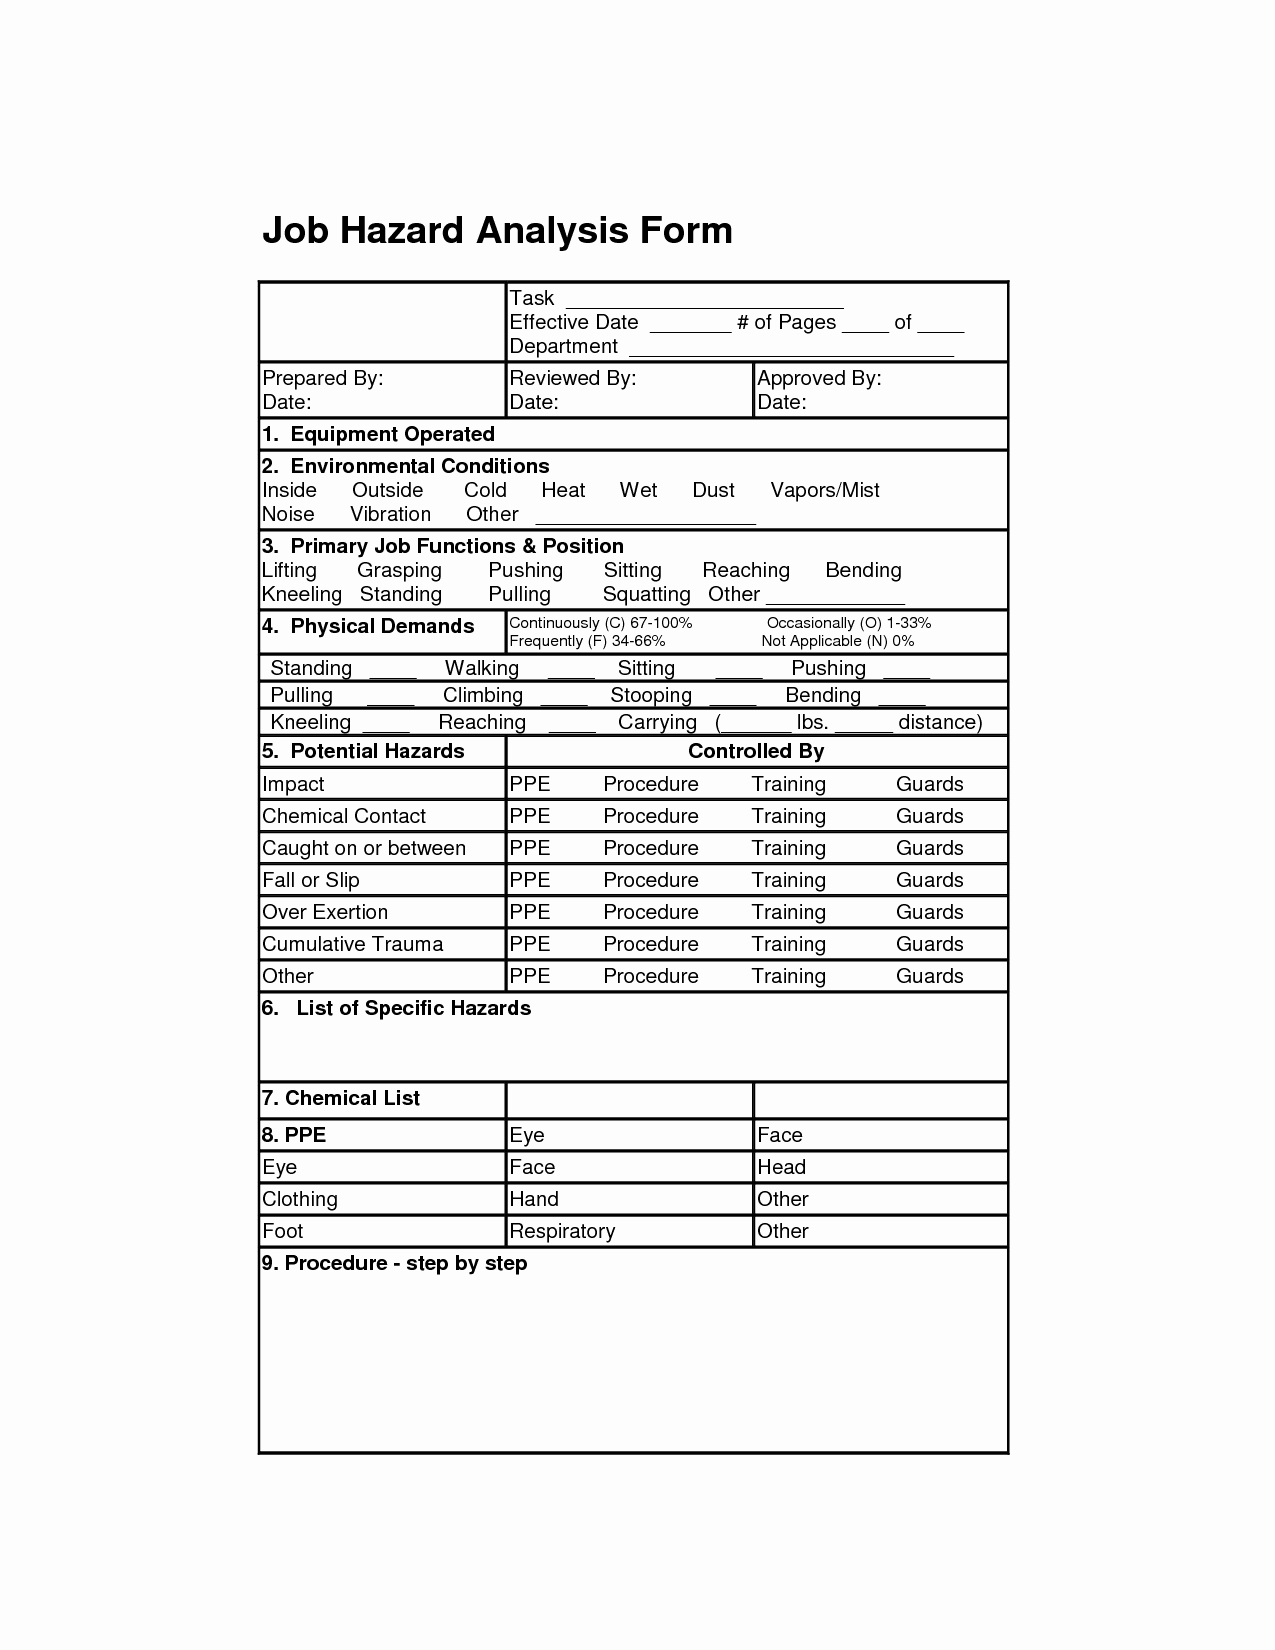 Job Hazard Analysis Template Inspirational Job Hazard Analysis form Job Analysis forms